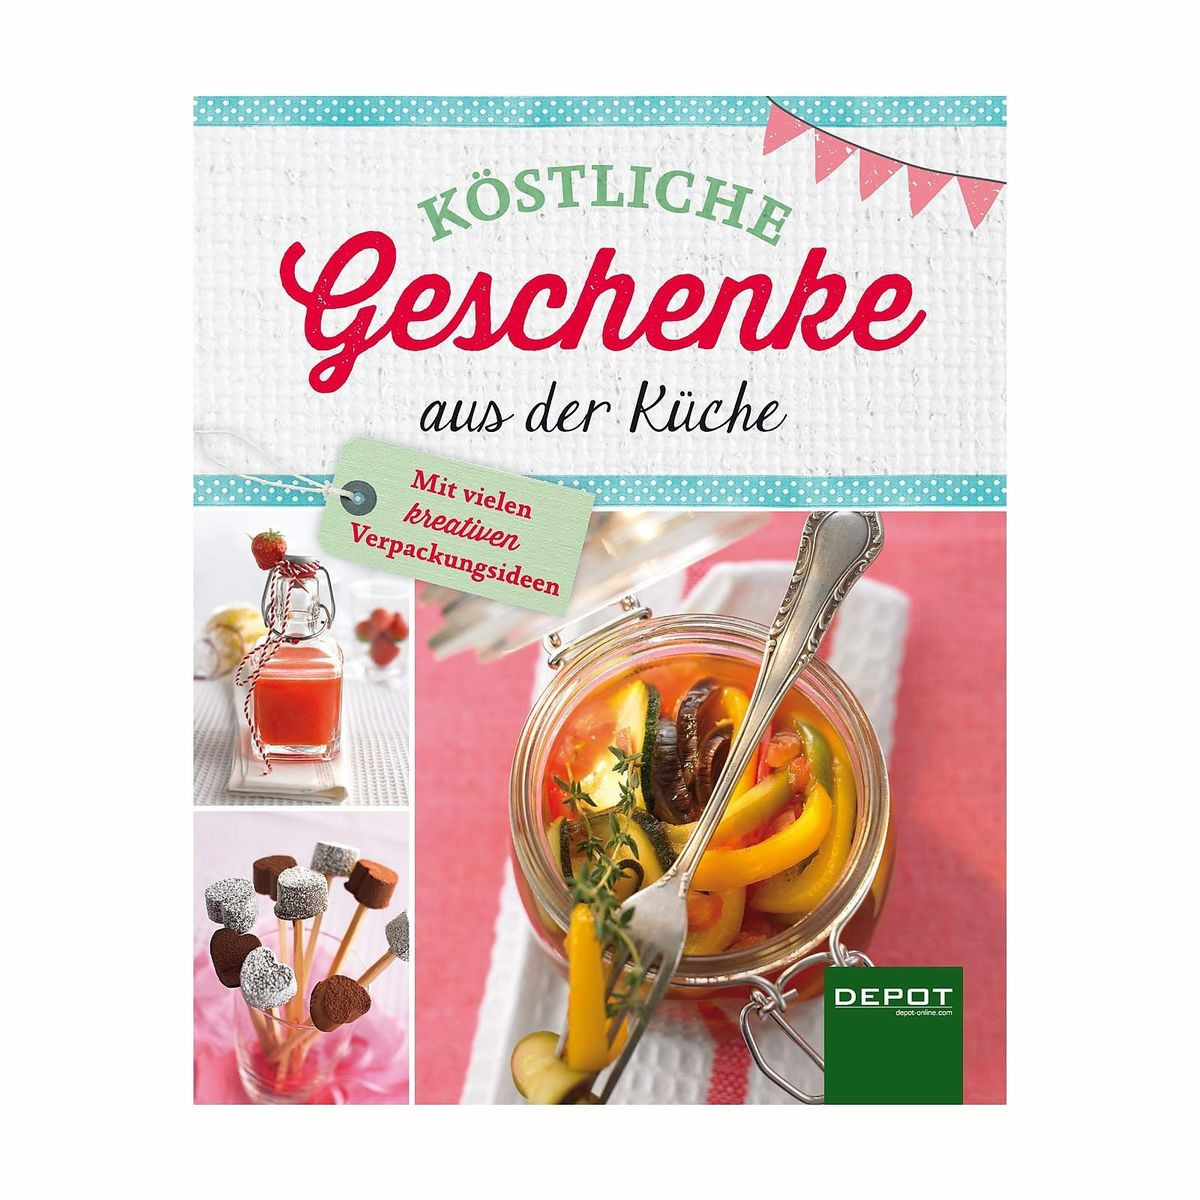 Depot Geschenke
 Buch Köstliche Geschenke aus der Küche Depot DE